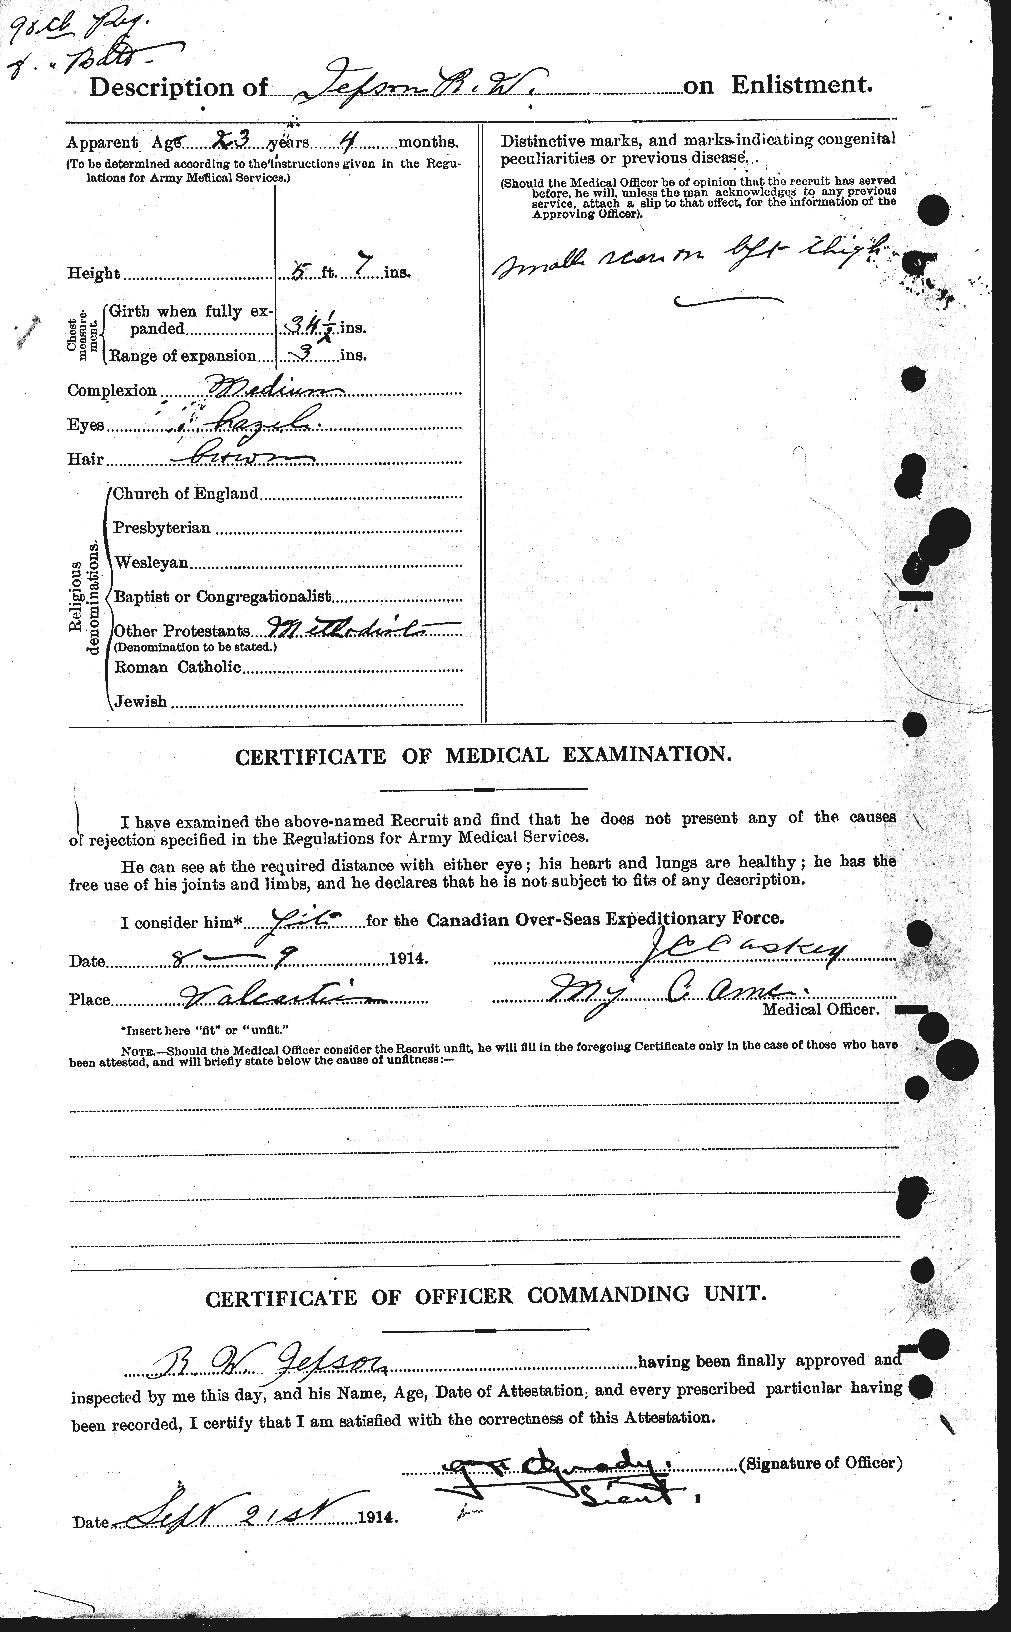 Dossiers du Personnel de la Première Guerre mondiale - CEC 421709b